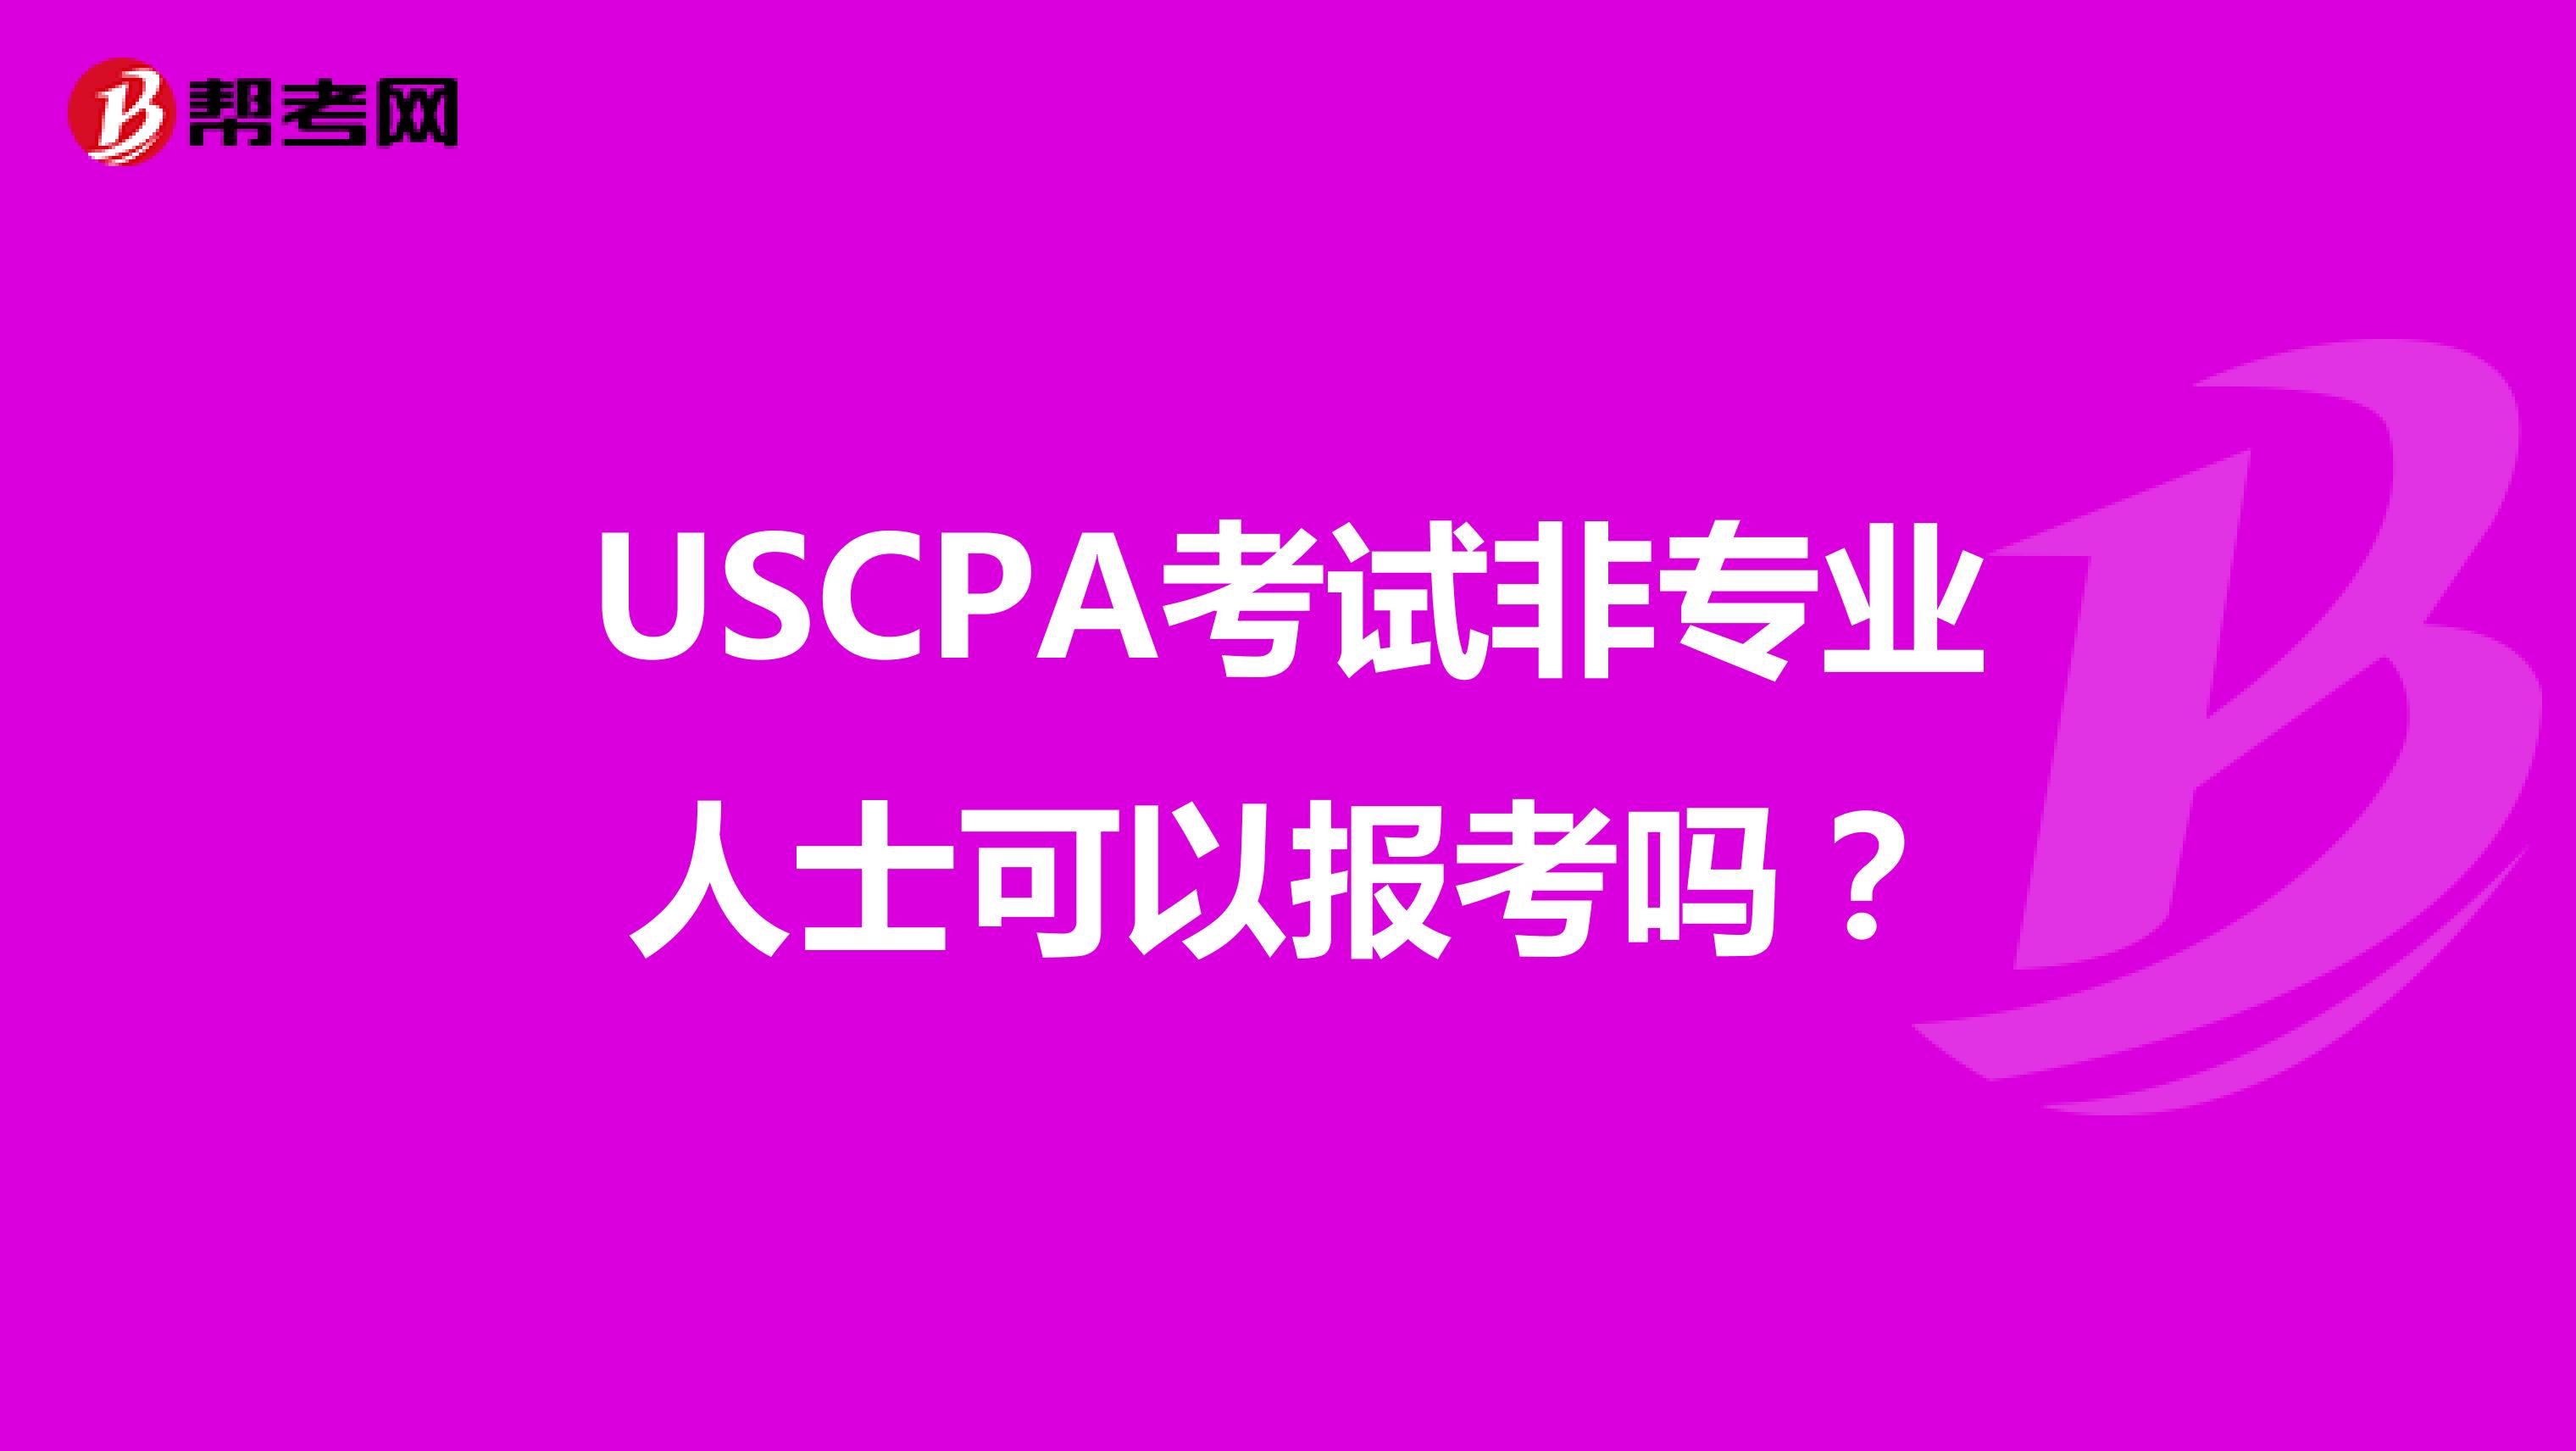 USCPA考试非专业人士可以报考吗？